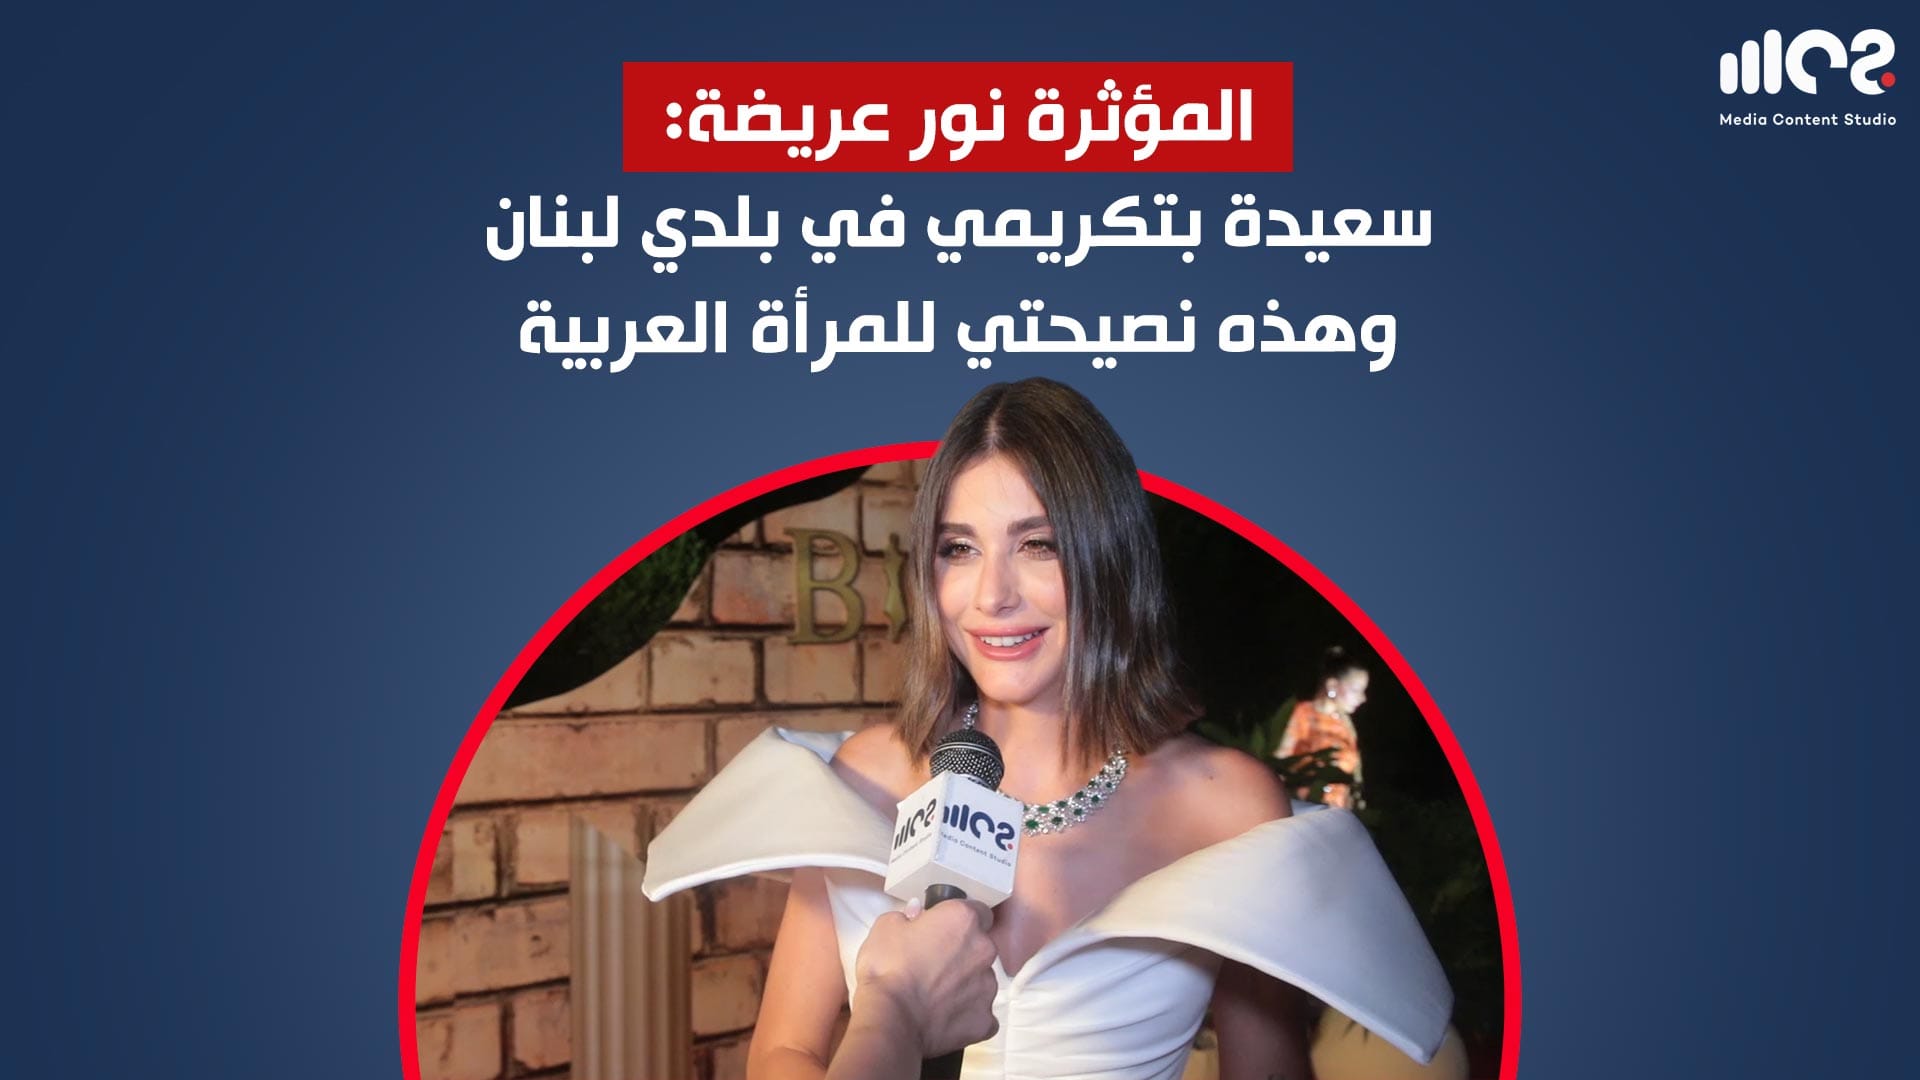 المؤثرة نور عريضة: سعيدة بتكريمي في بلدي لبنان وهذه نصيحتي للمرأة العربية